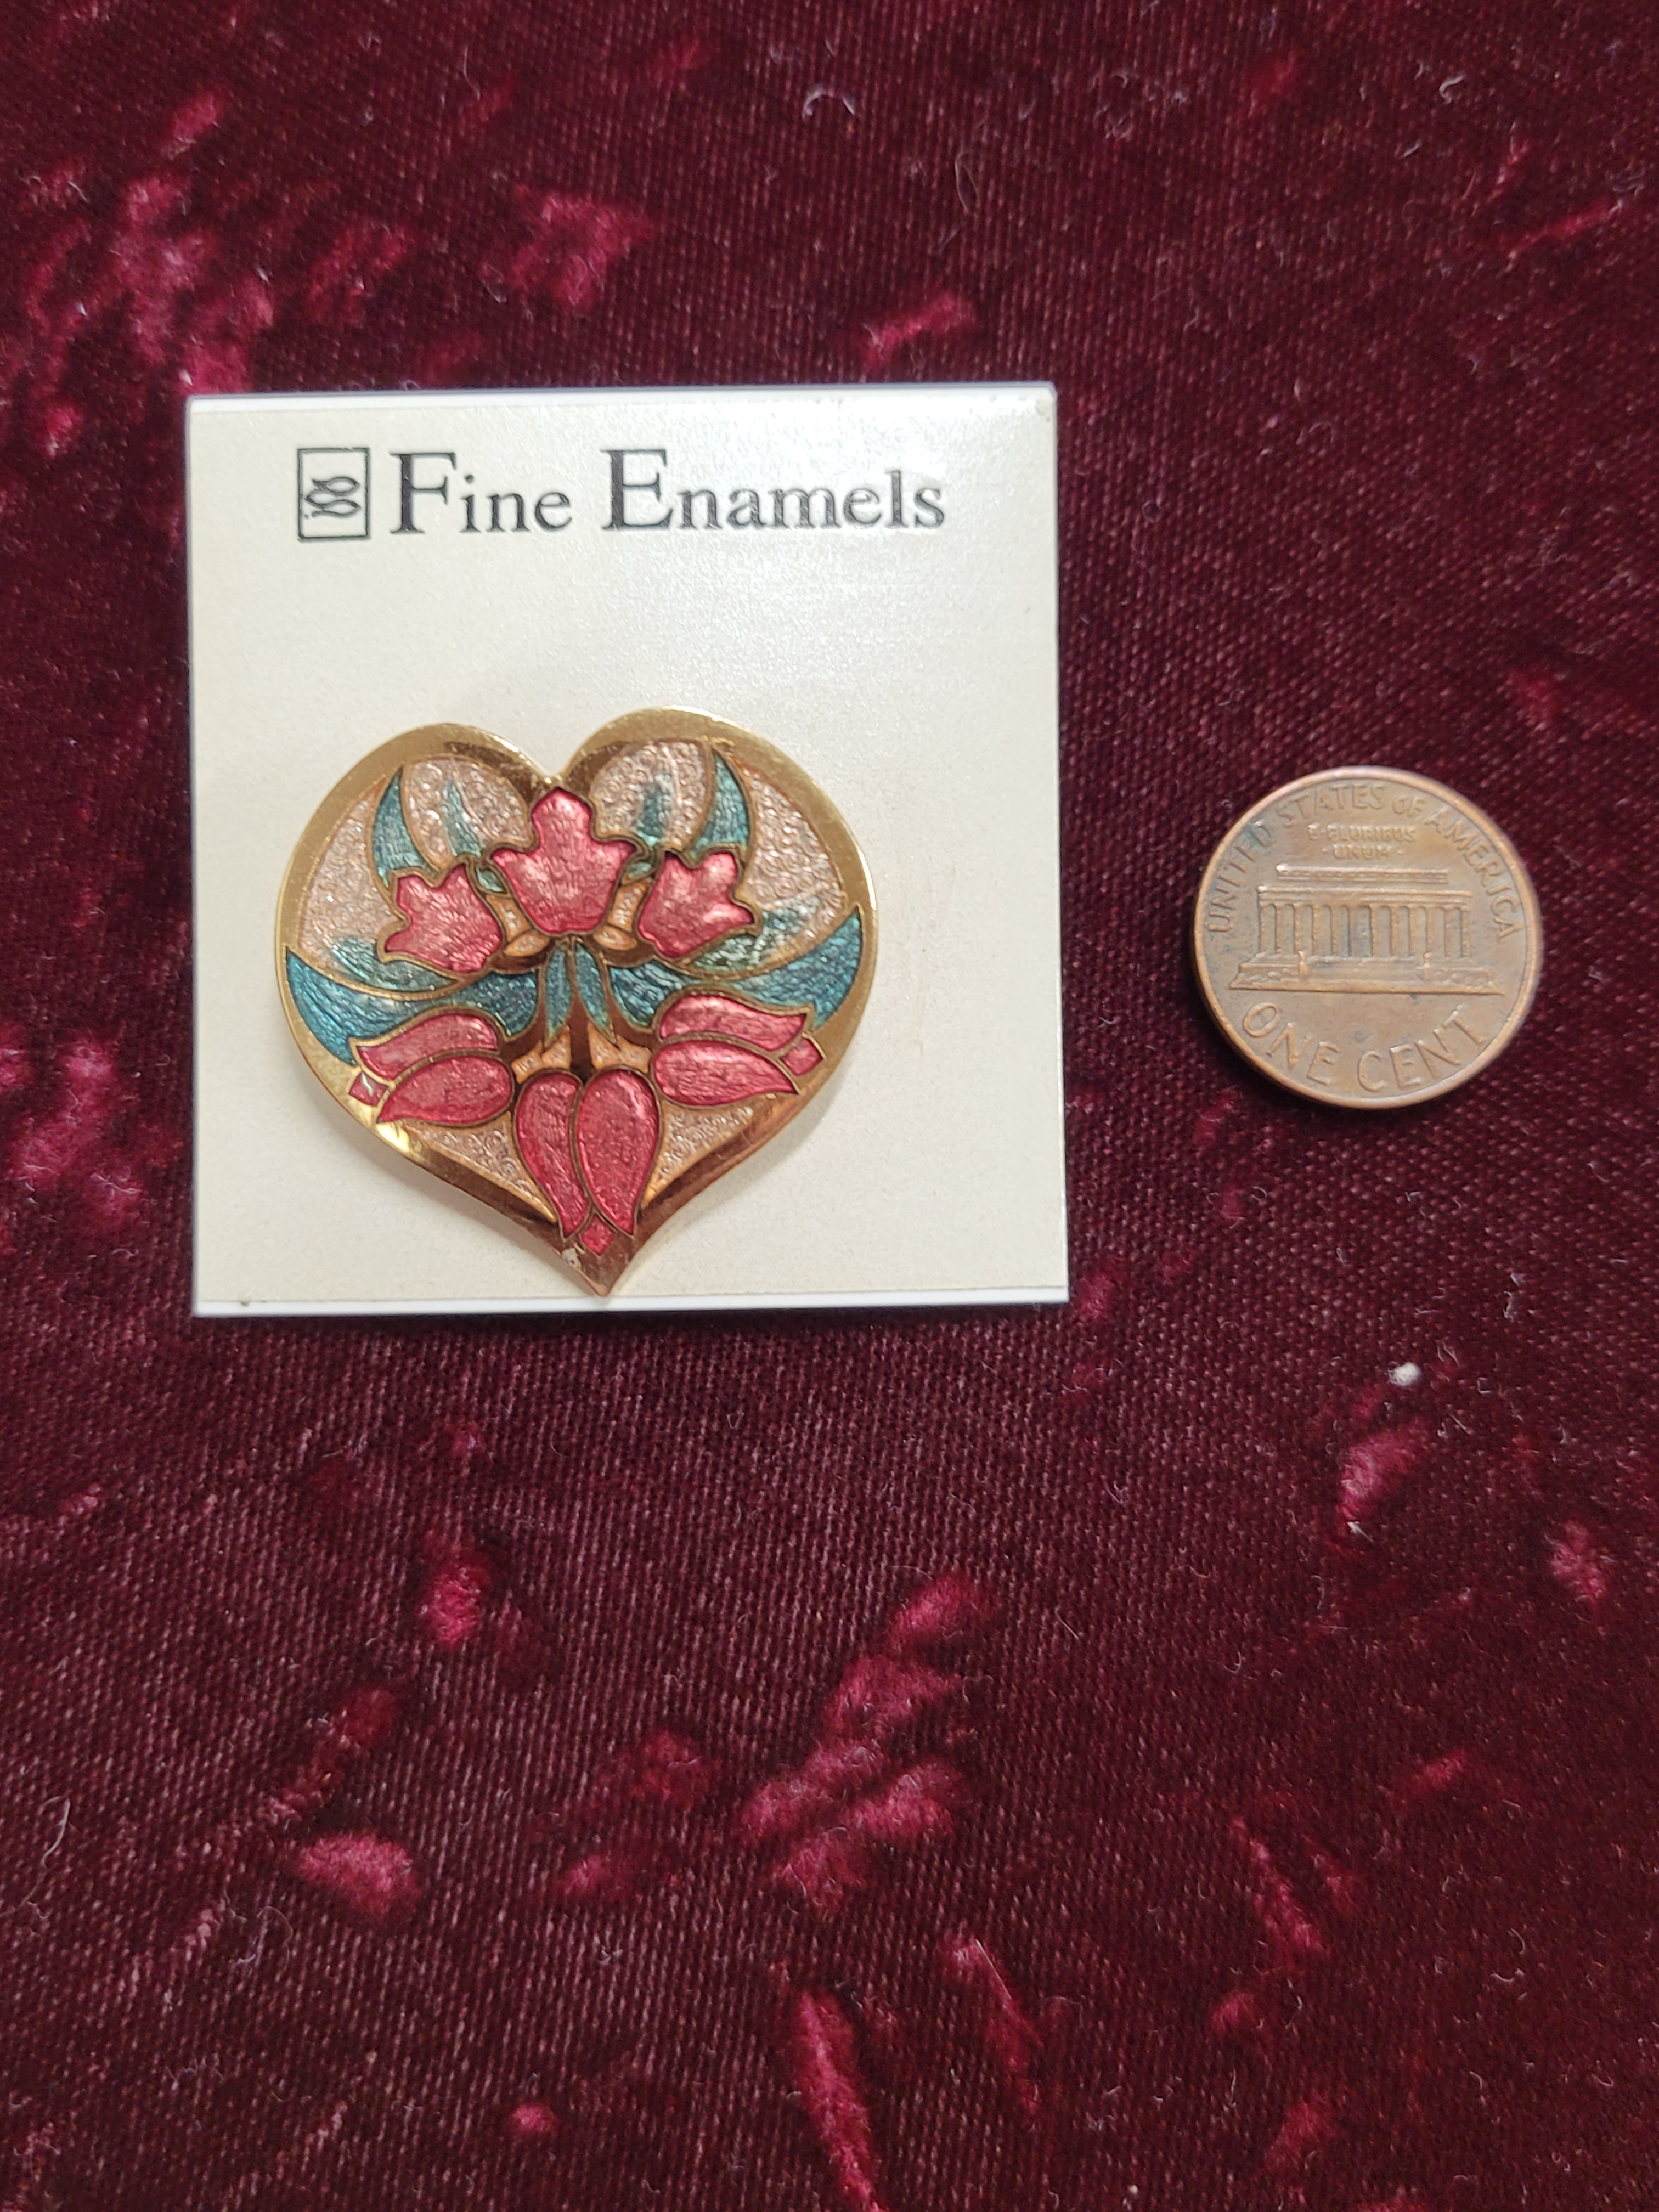 Fine Enamel Heart-shaped brooch / pin by Fish Enterprises